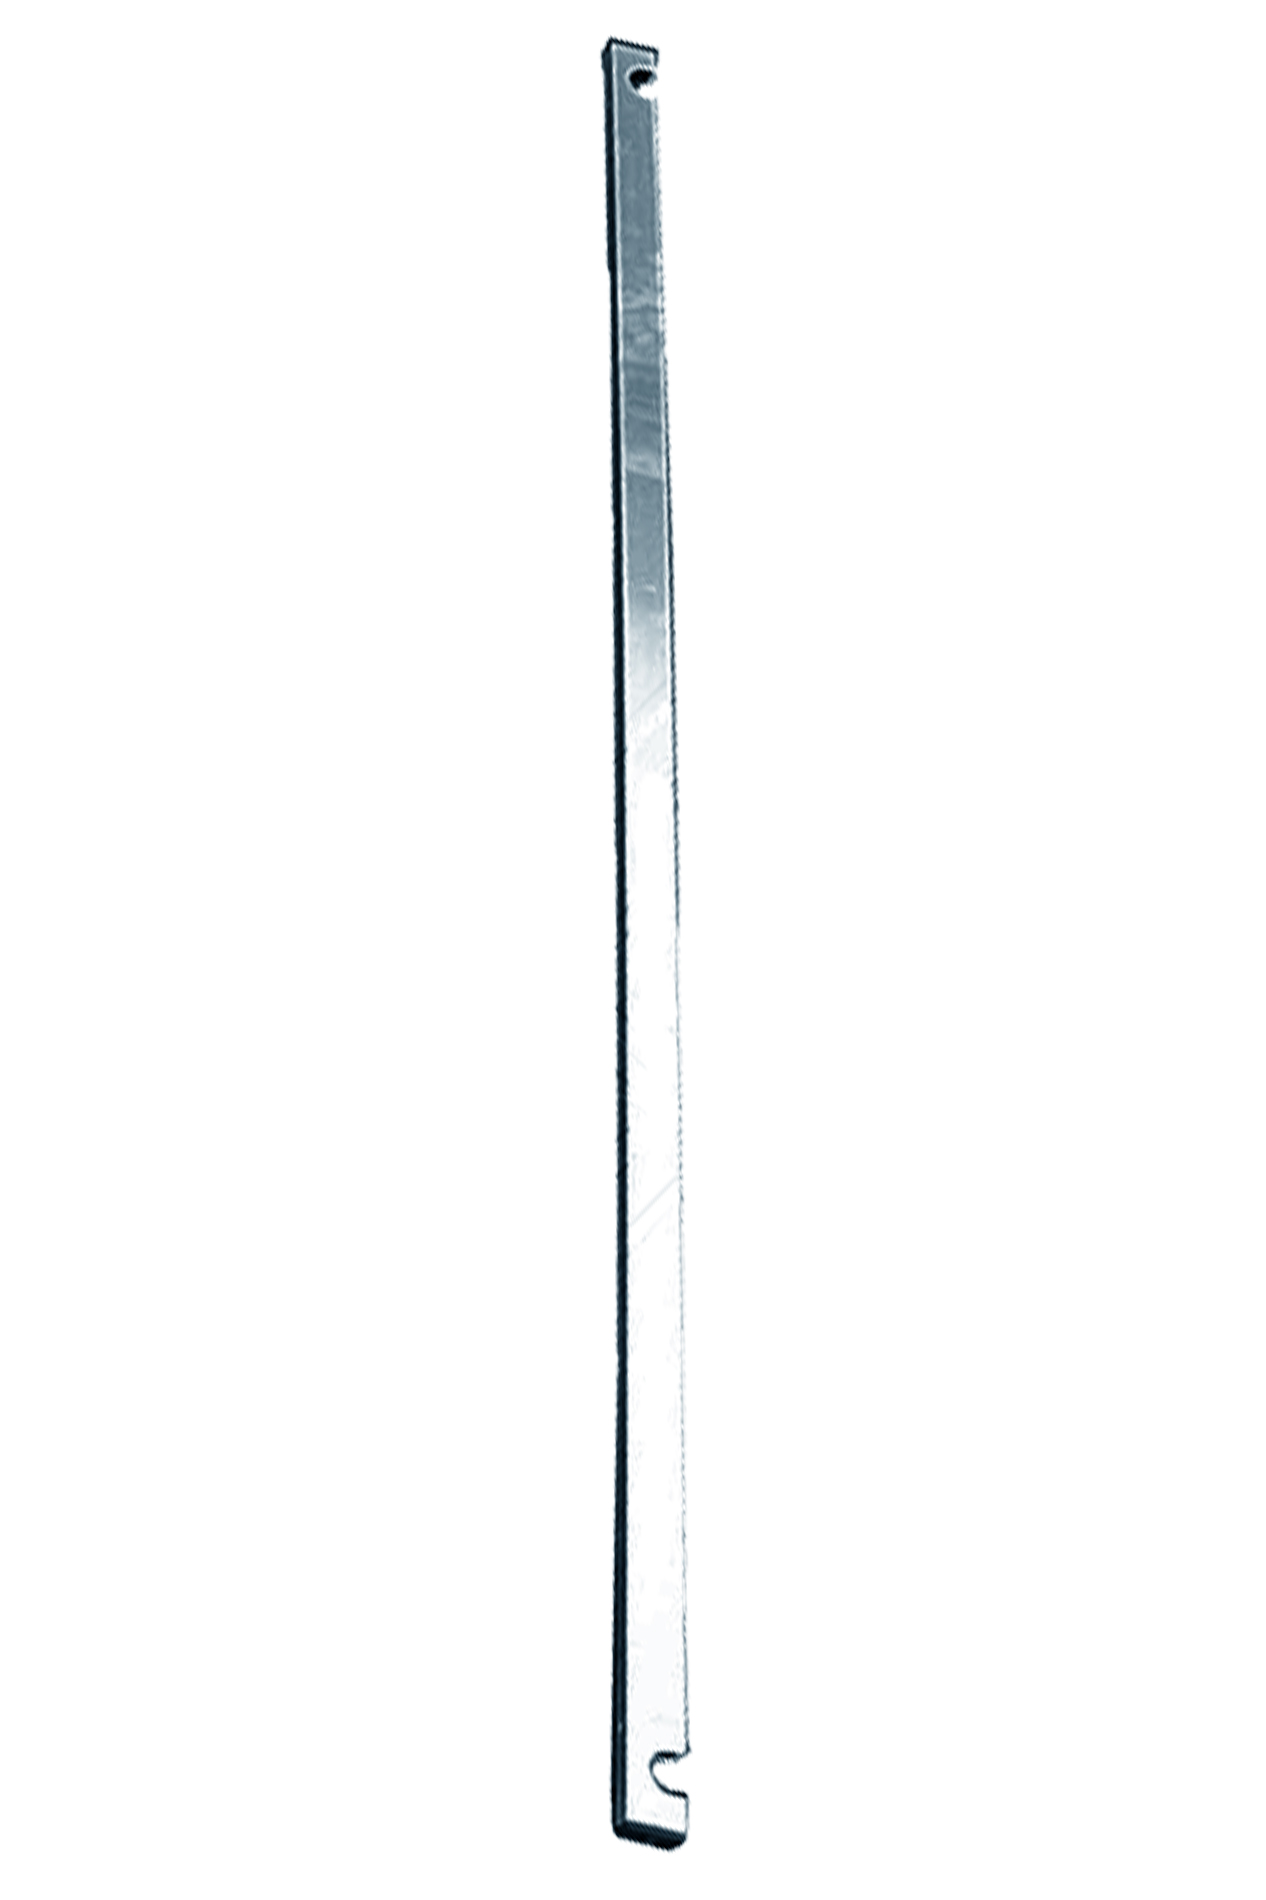 Дополнительное изображение Stabilo серии 1000 рабочая высота 4,2 м, размер площадки (2.5x0.75 м)